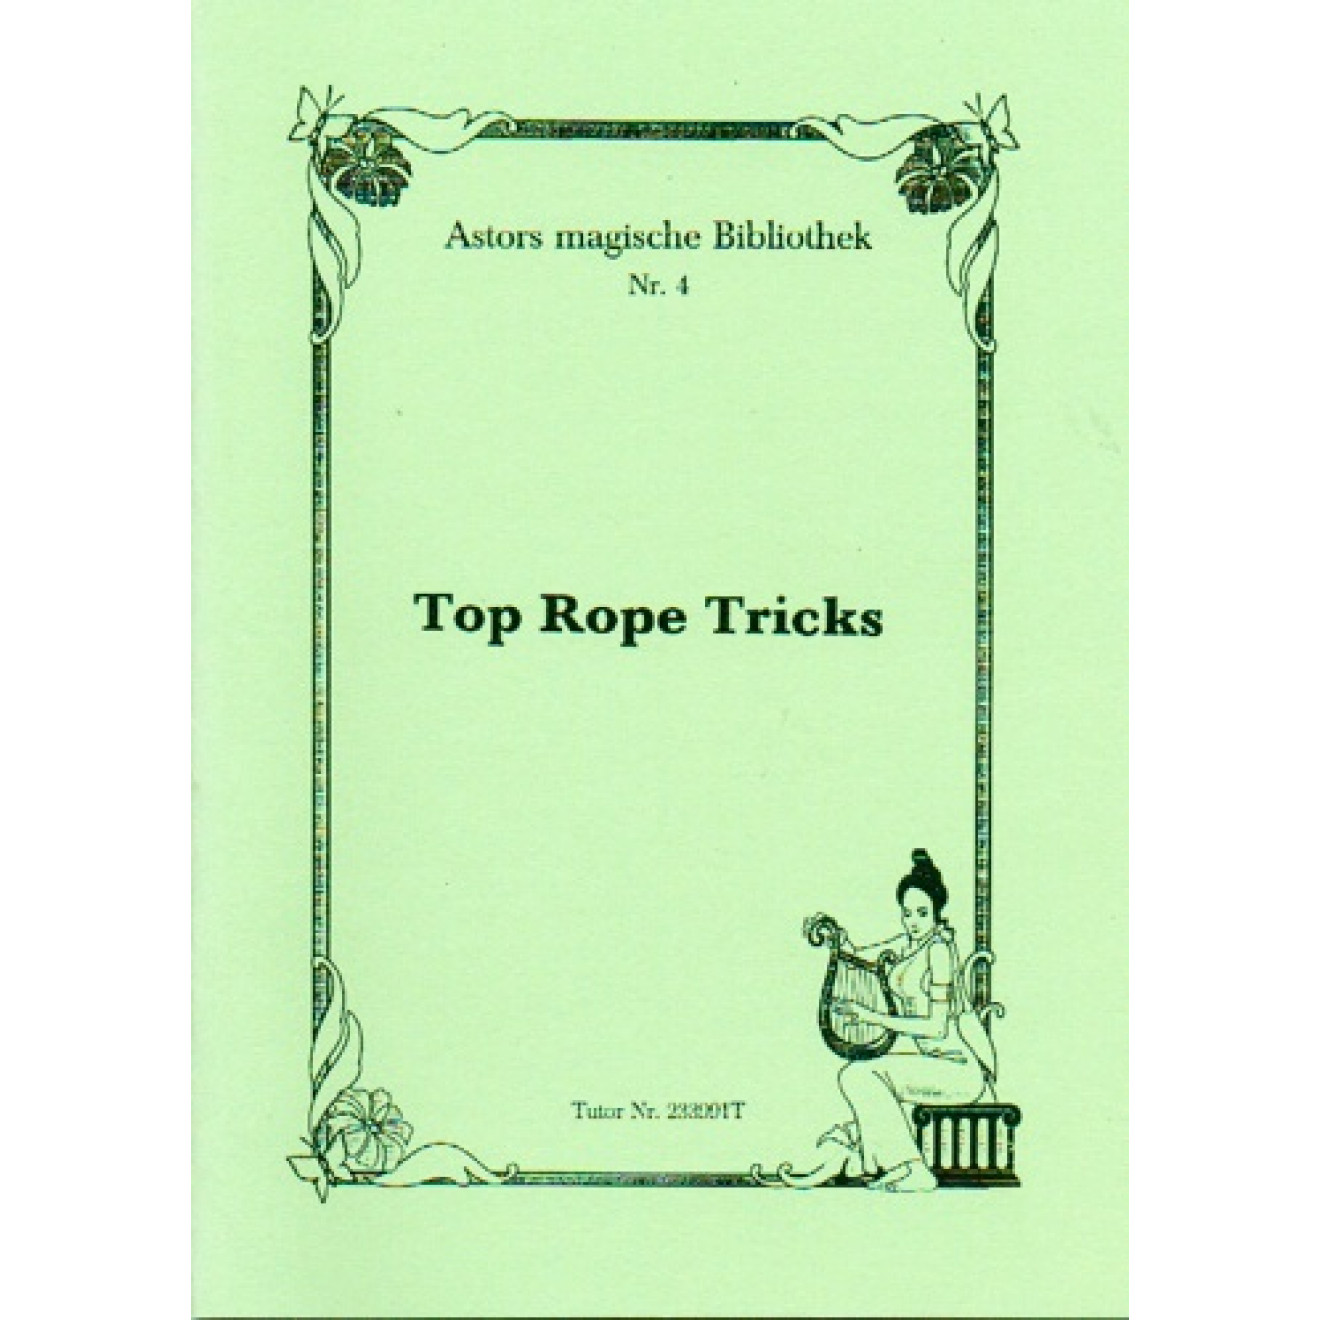 Top Rope Tricks